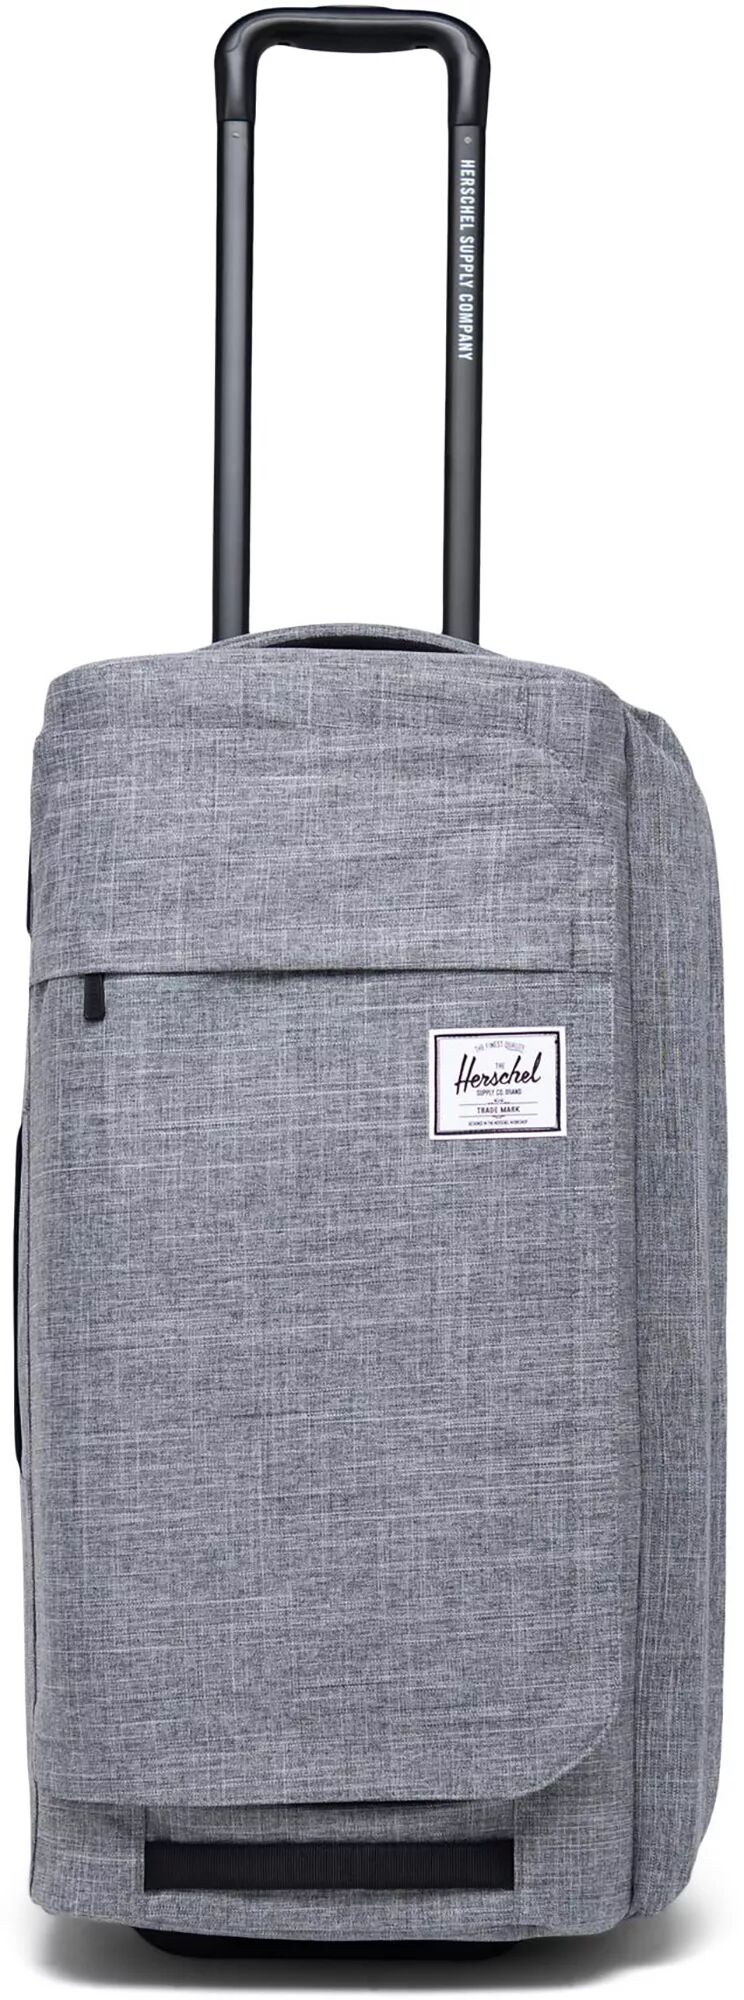 Herschel Supply Company Herschel Outfitter Wheelie Luggage   70L, Men's, Gray